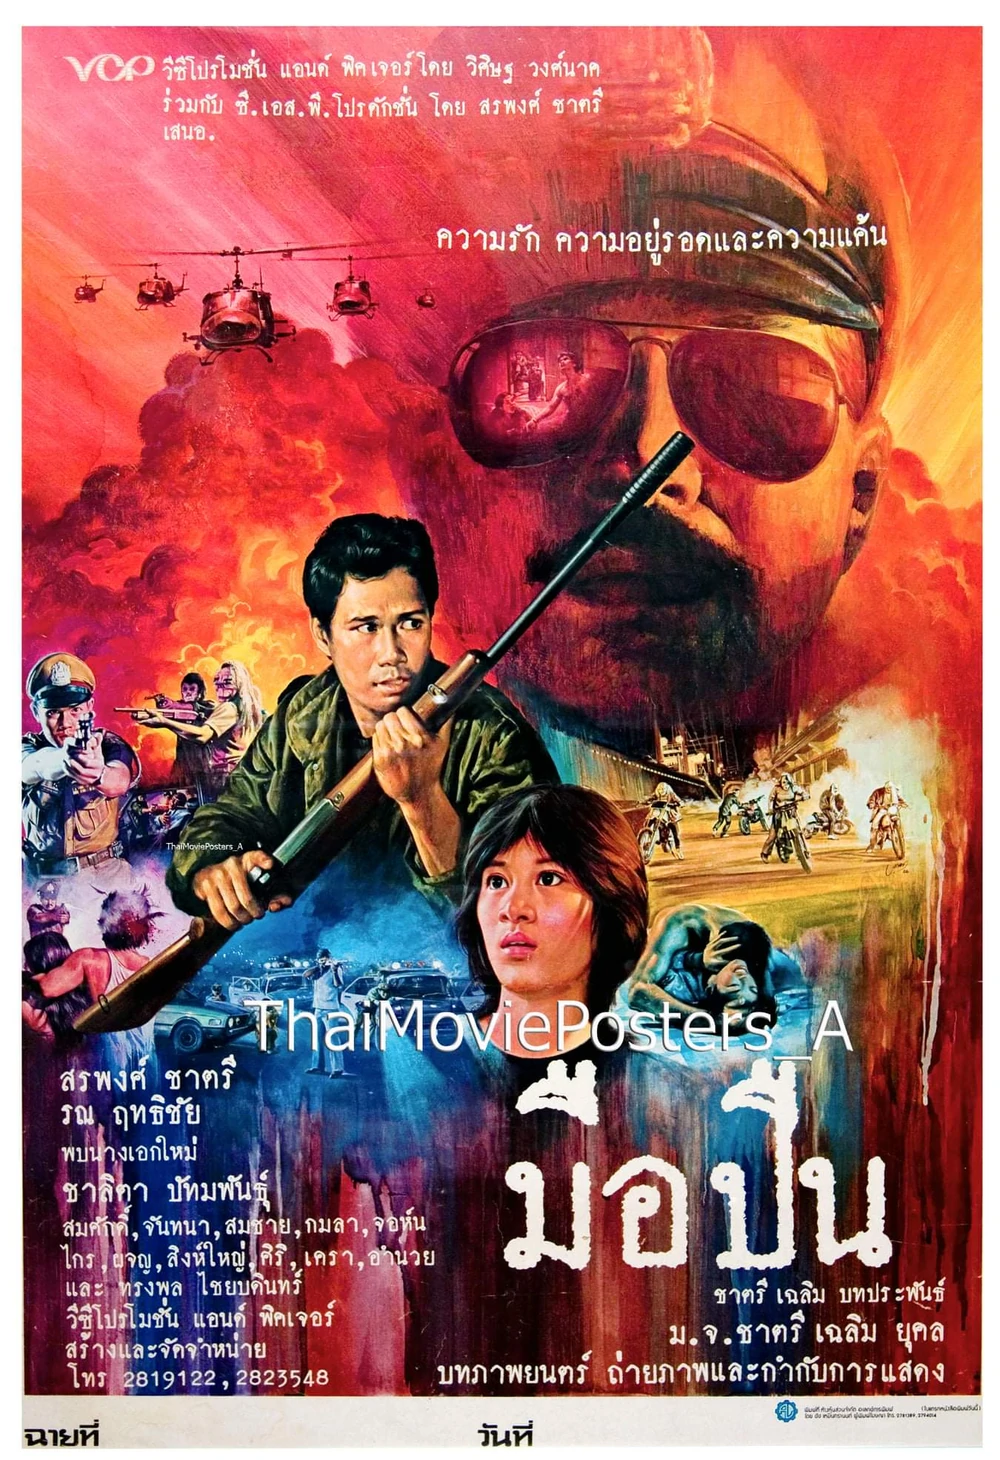 ที่มา : Thai Movie Posters